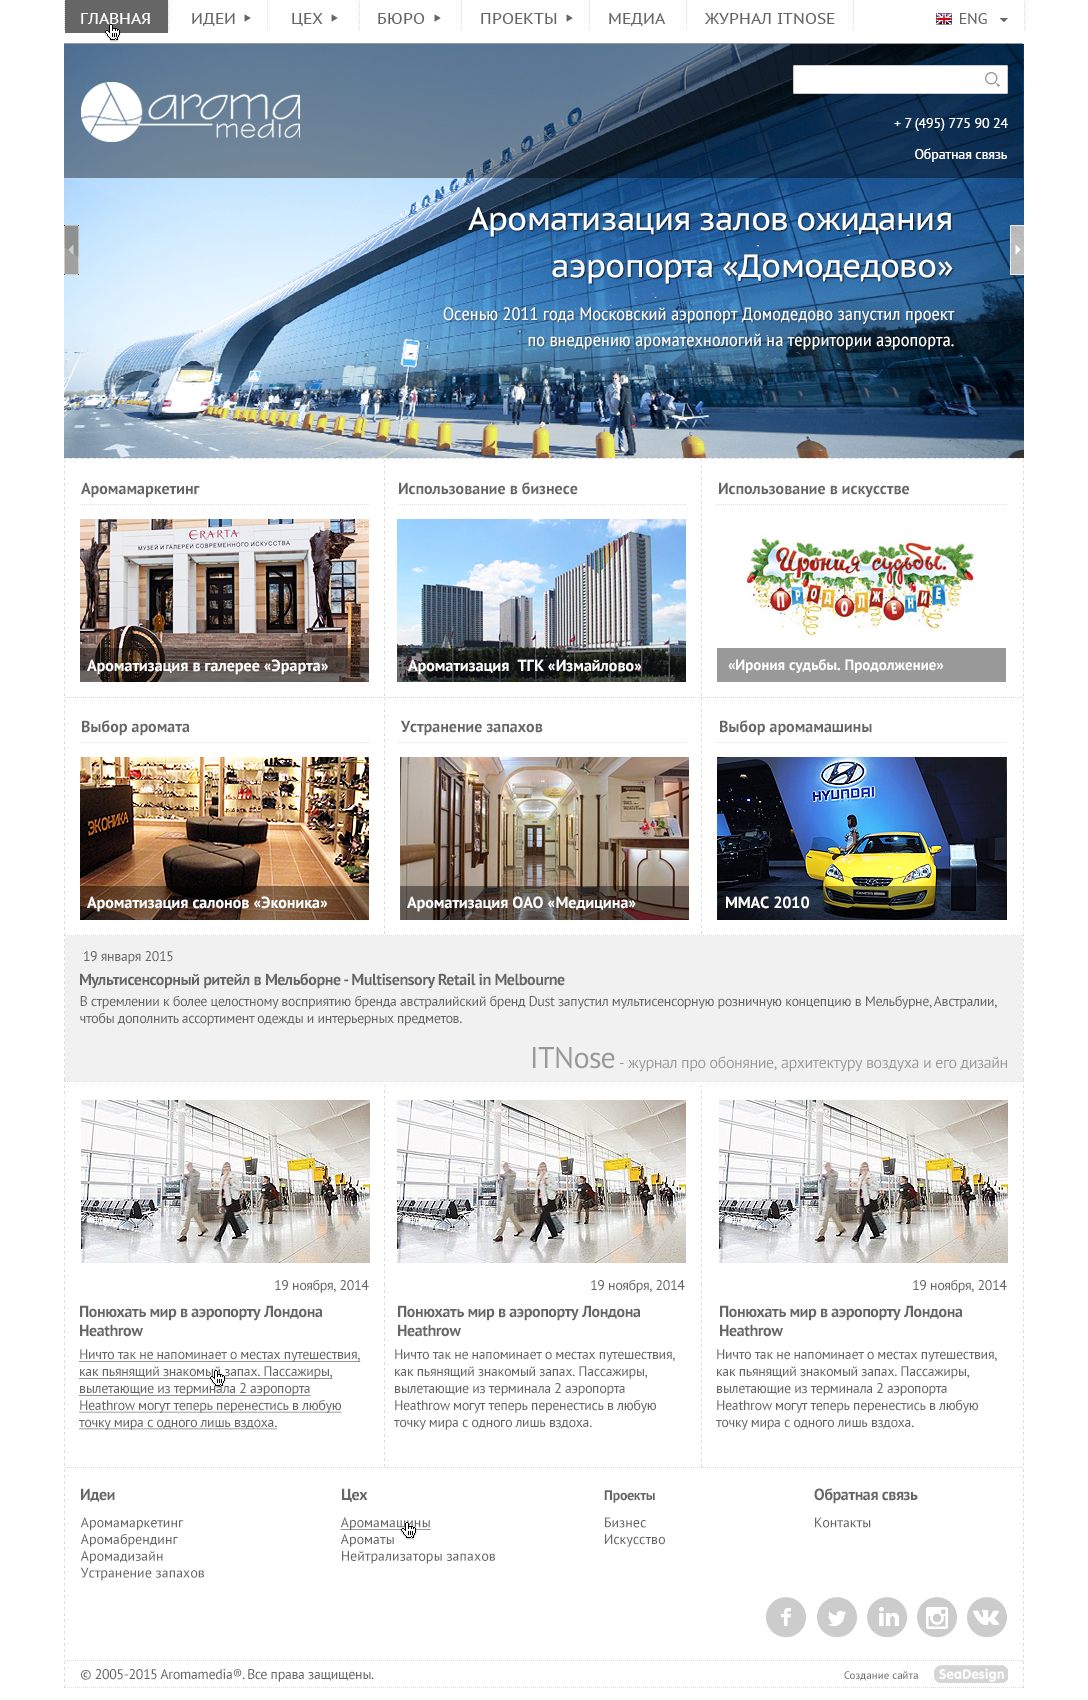 Дизайн главной страницы сайта "Аромамедиа"